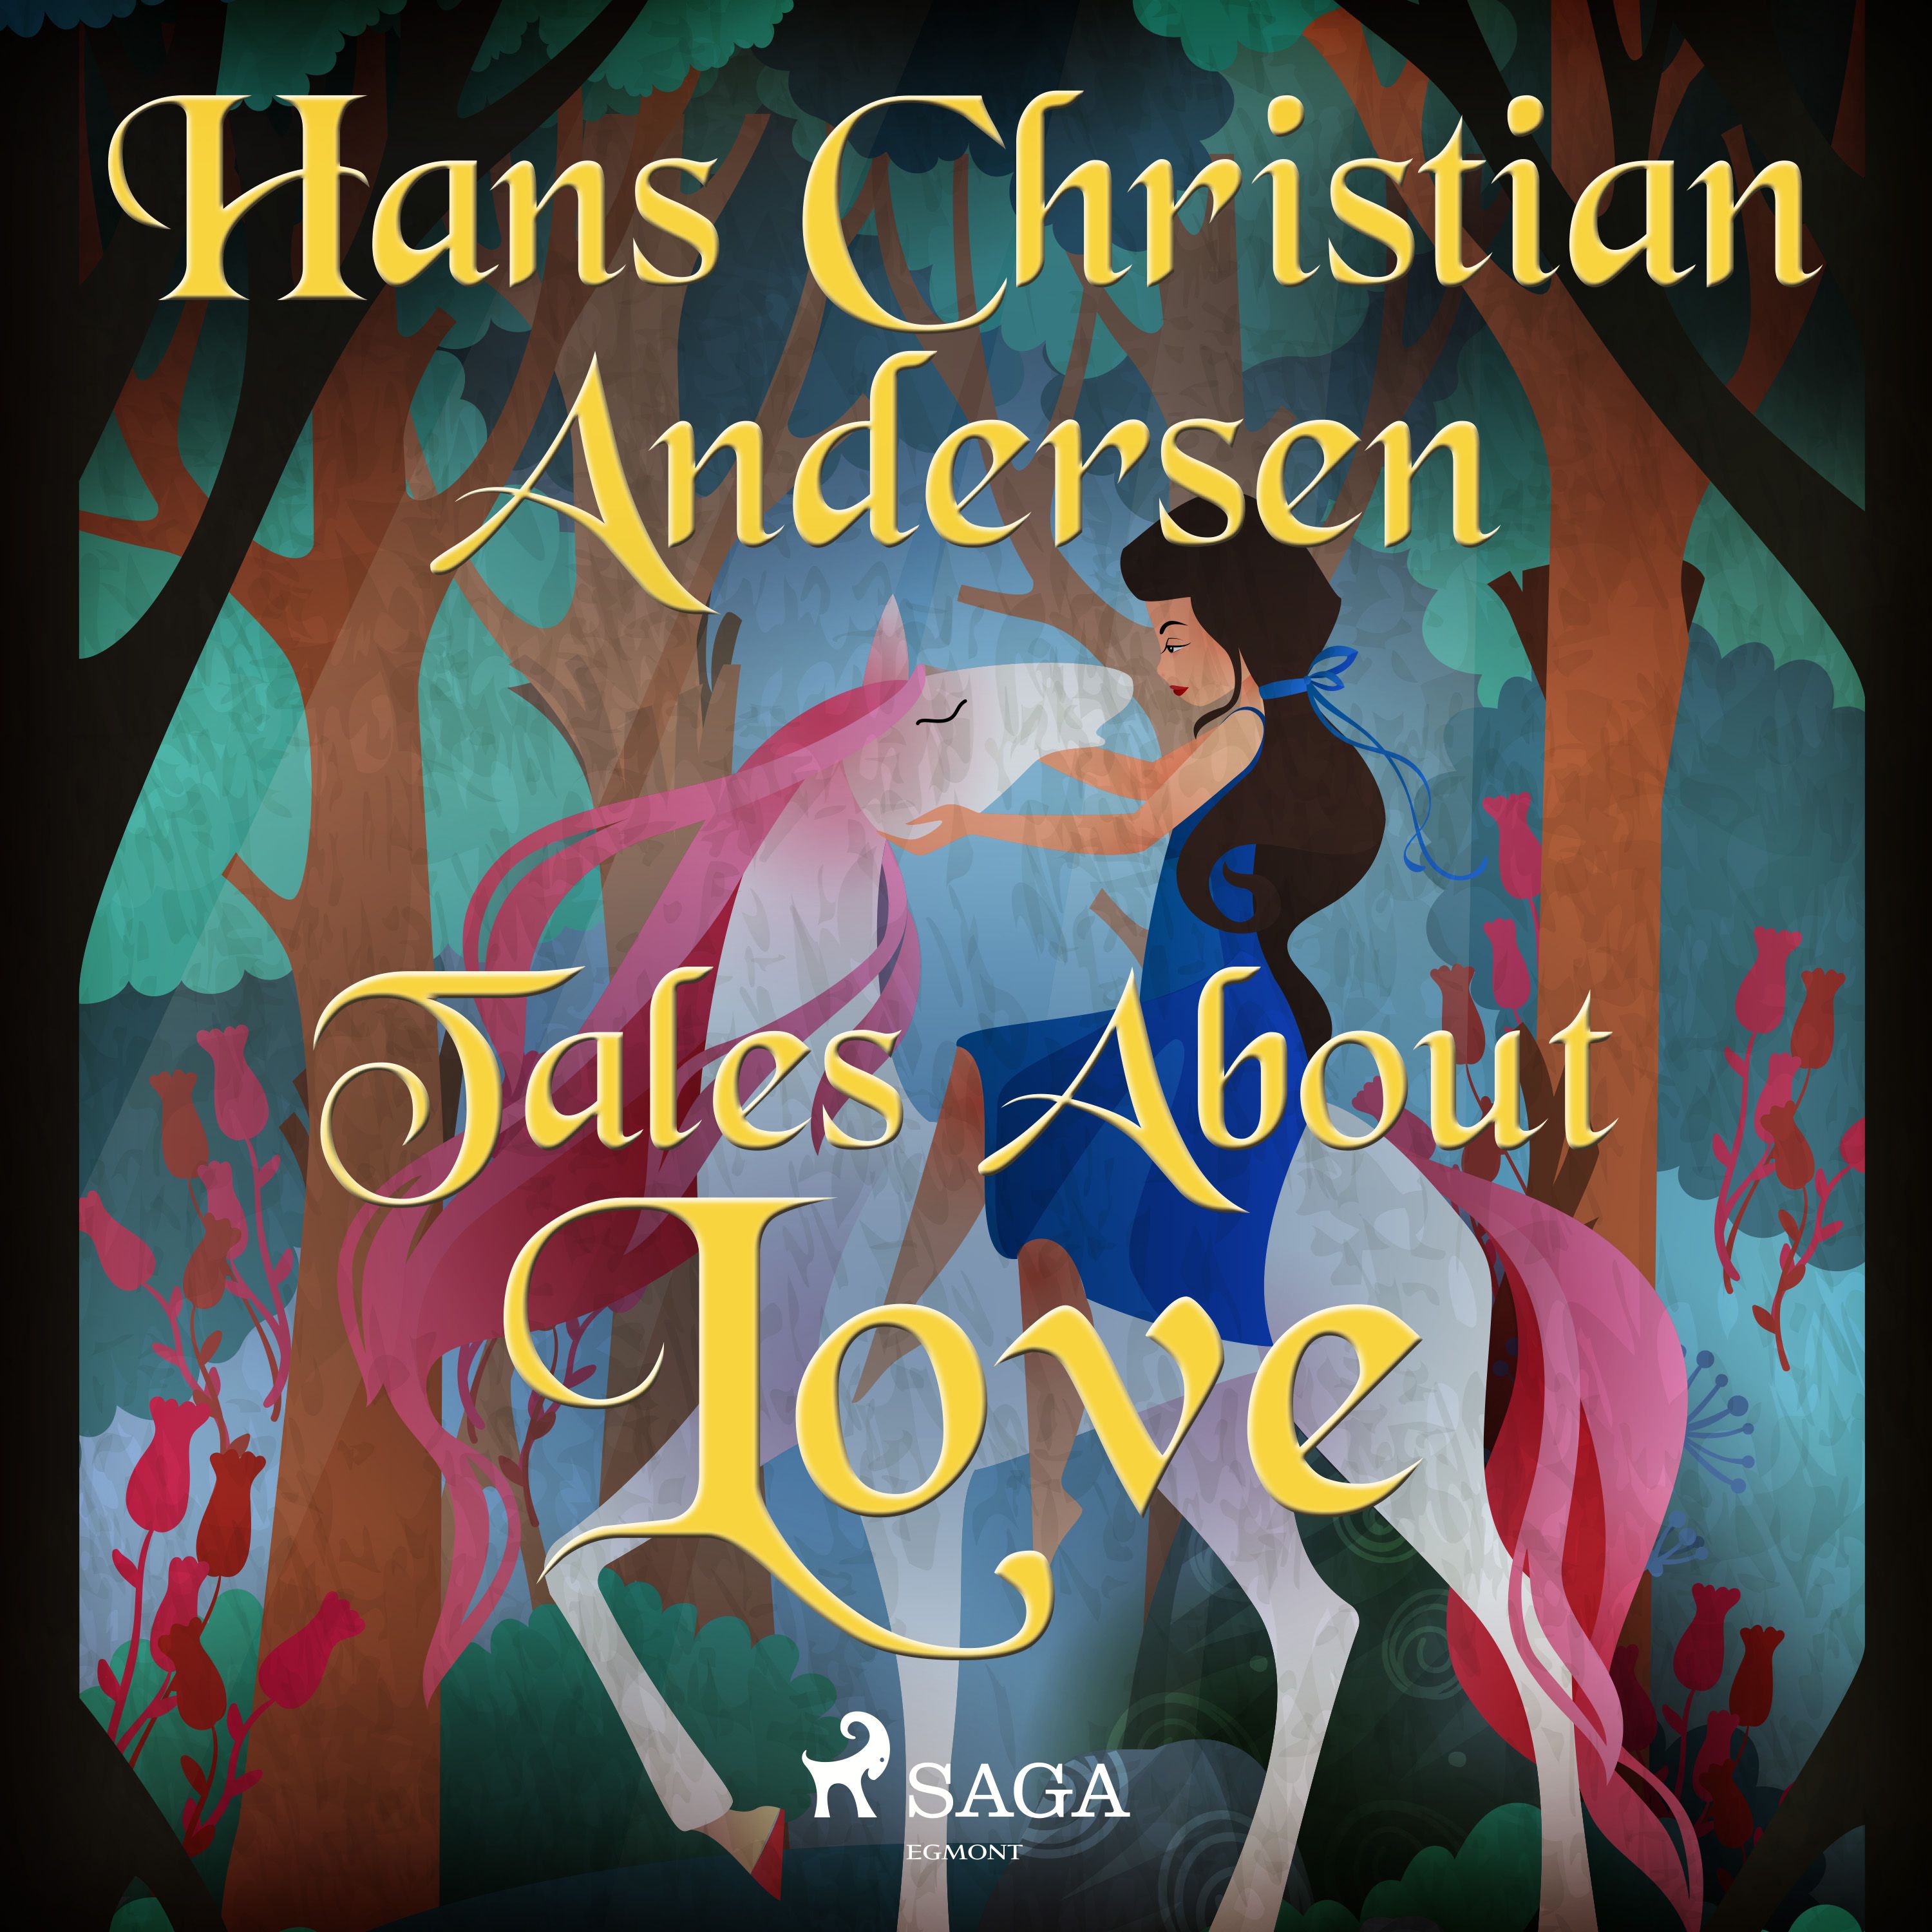 Tales About Love, ljudbok av Hans Christian Andersen